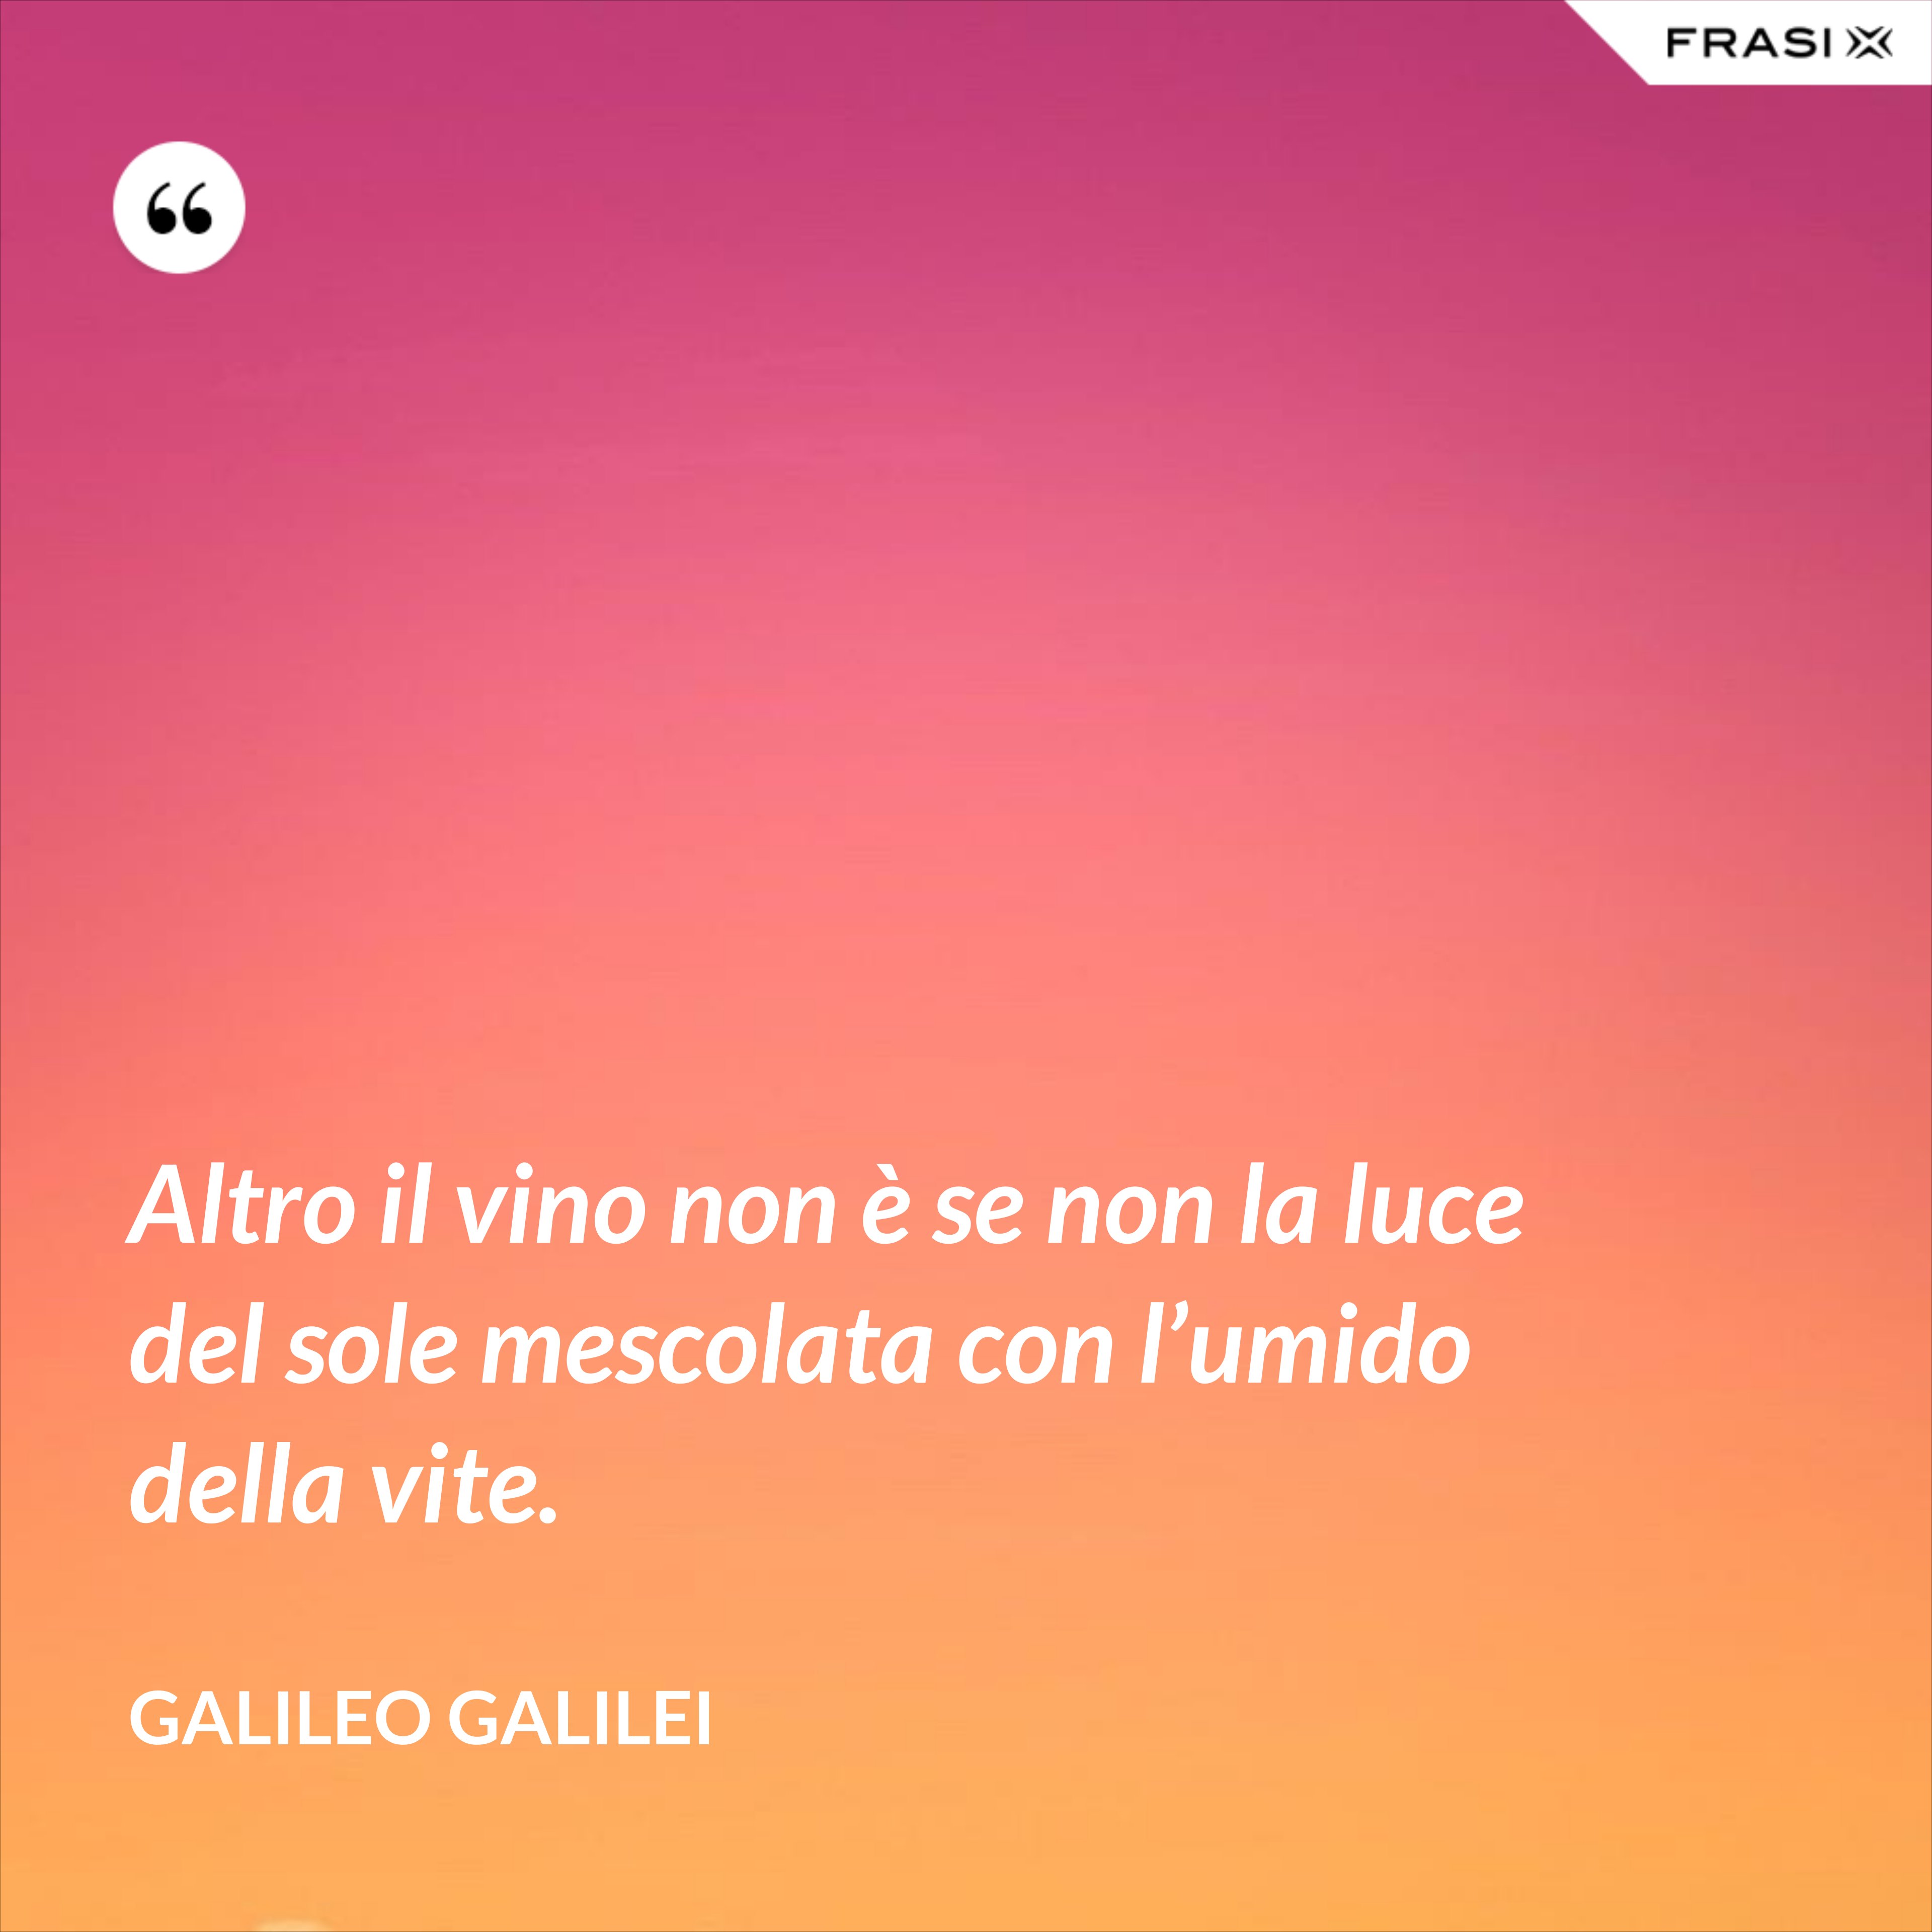 Altro il vino non è se non la luce del sole mescolata con l’umido della vite. - Galileo Galilei